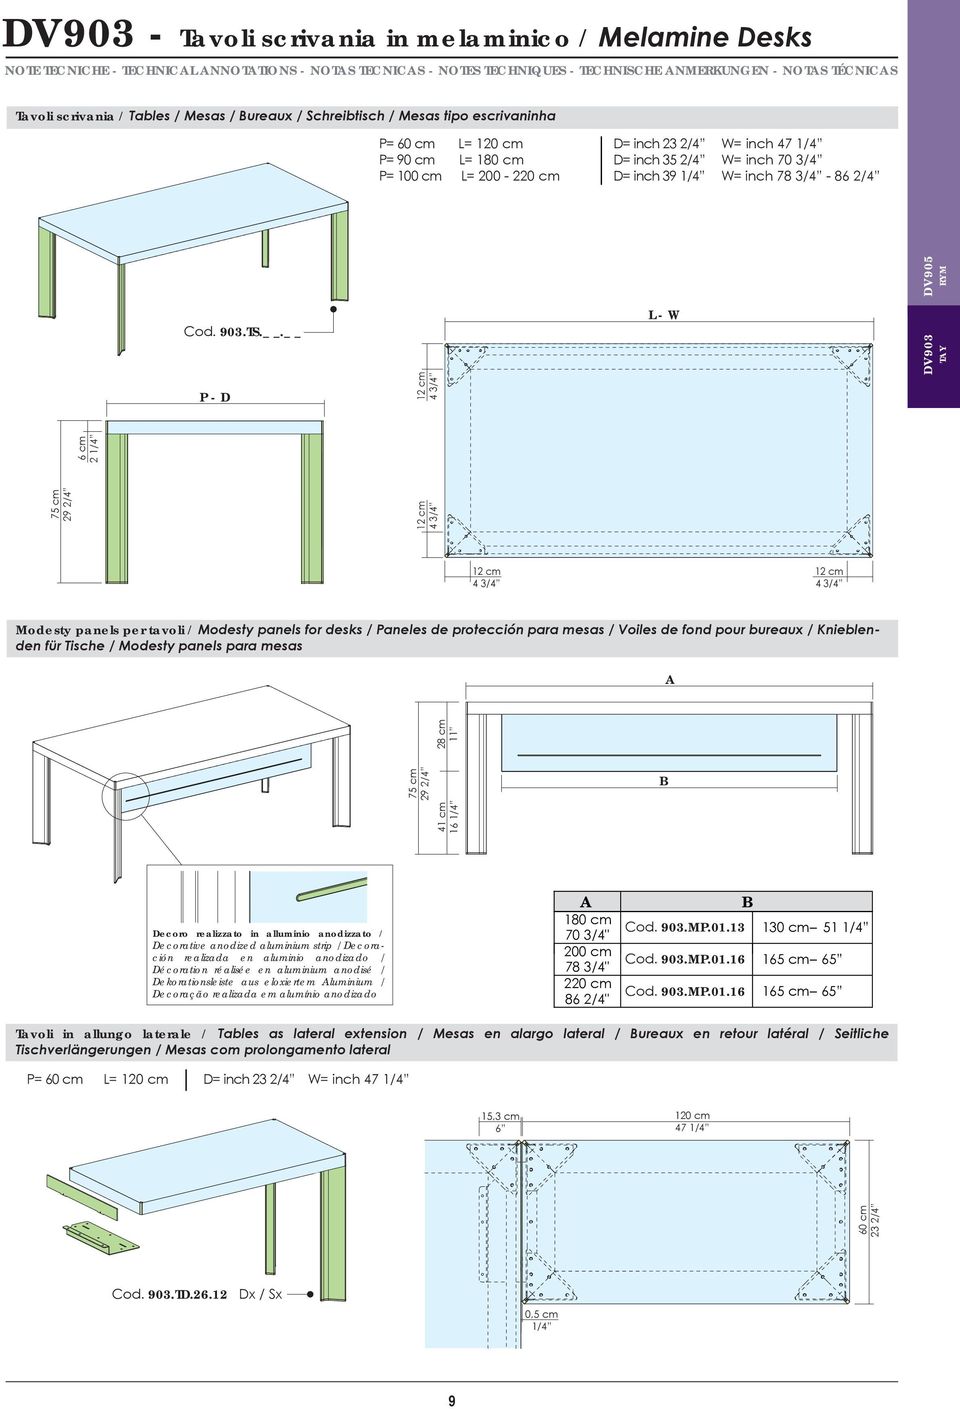 . L - W DV90 TAY P - D 12 cm 4 /4 75 cm 29 2/4 12 cm 4 /4 6 cm 2 1/4 12 cm 4 /4 12 cm 4 /4 Modesty panels per tavoli / Modesty panels for desks / Paneles de protección para mesas / Voiles de fond